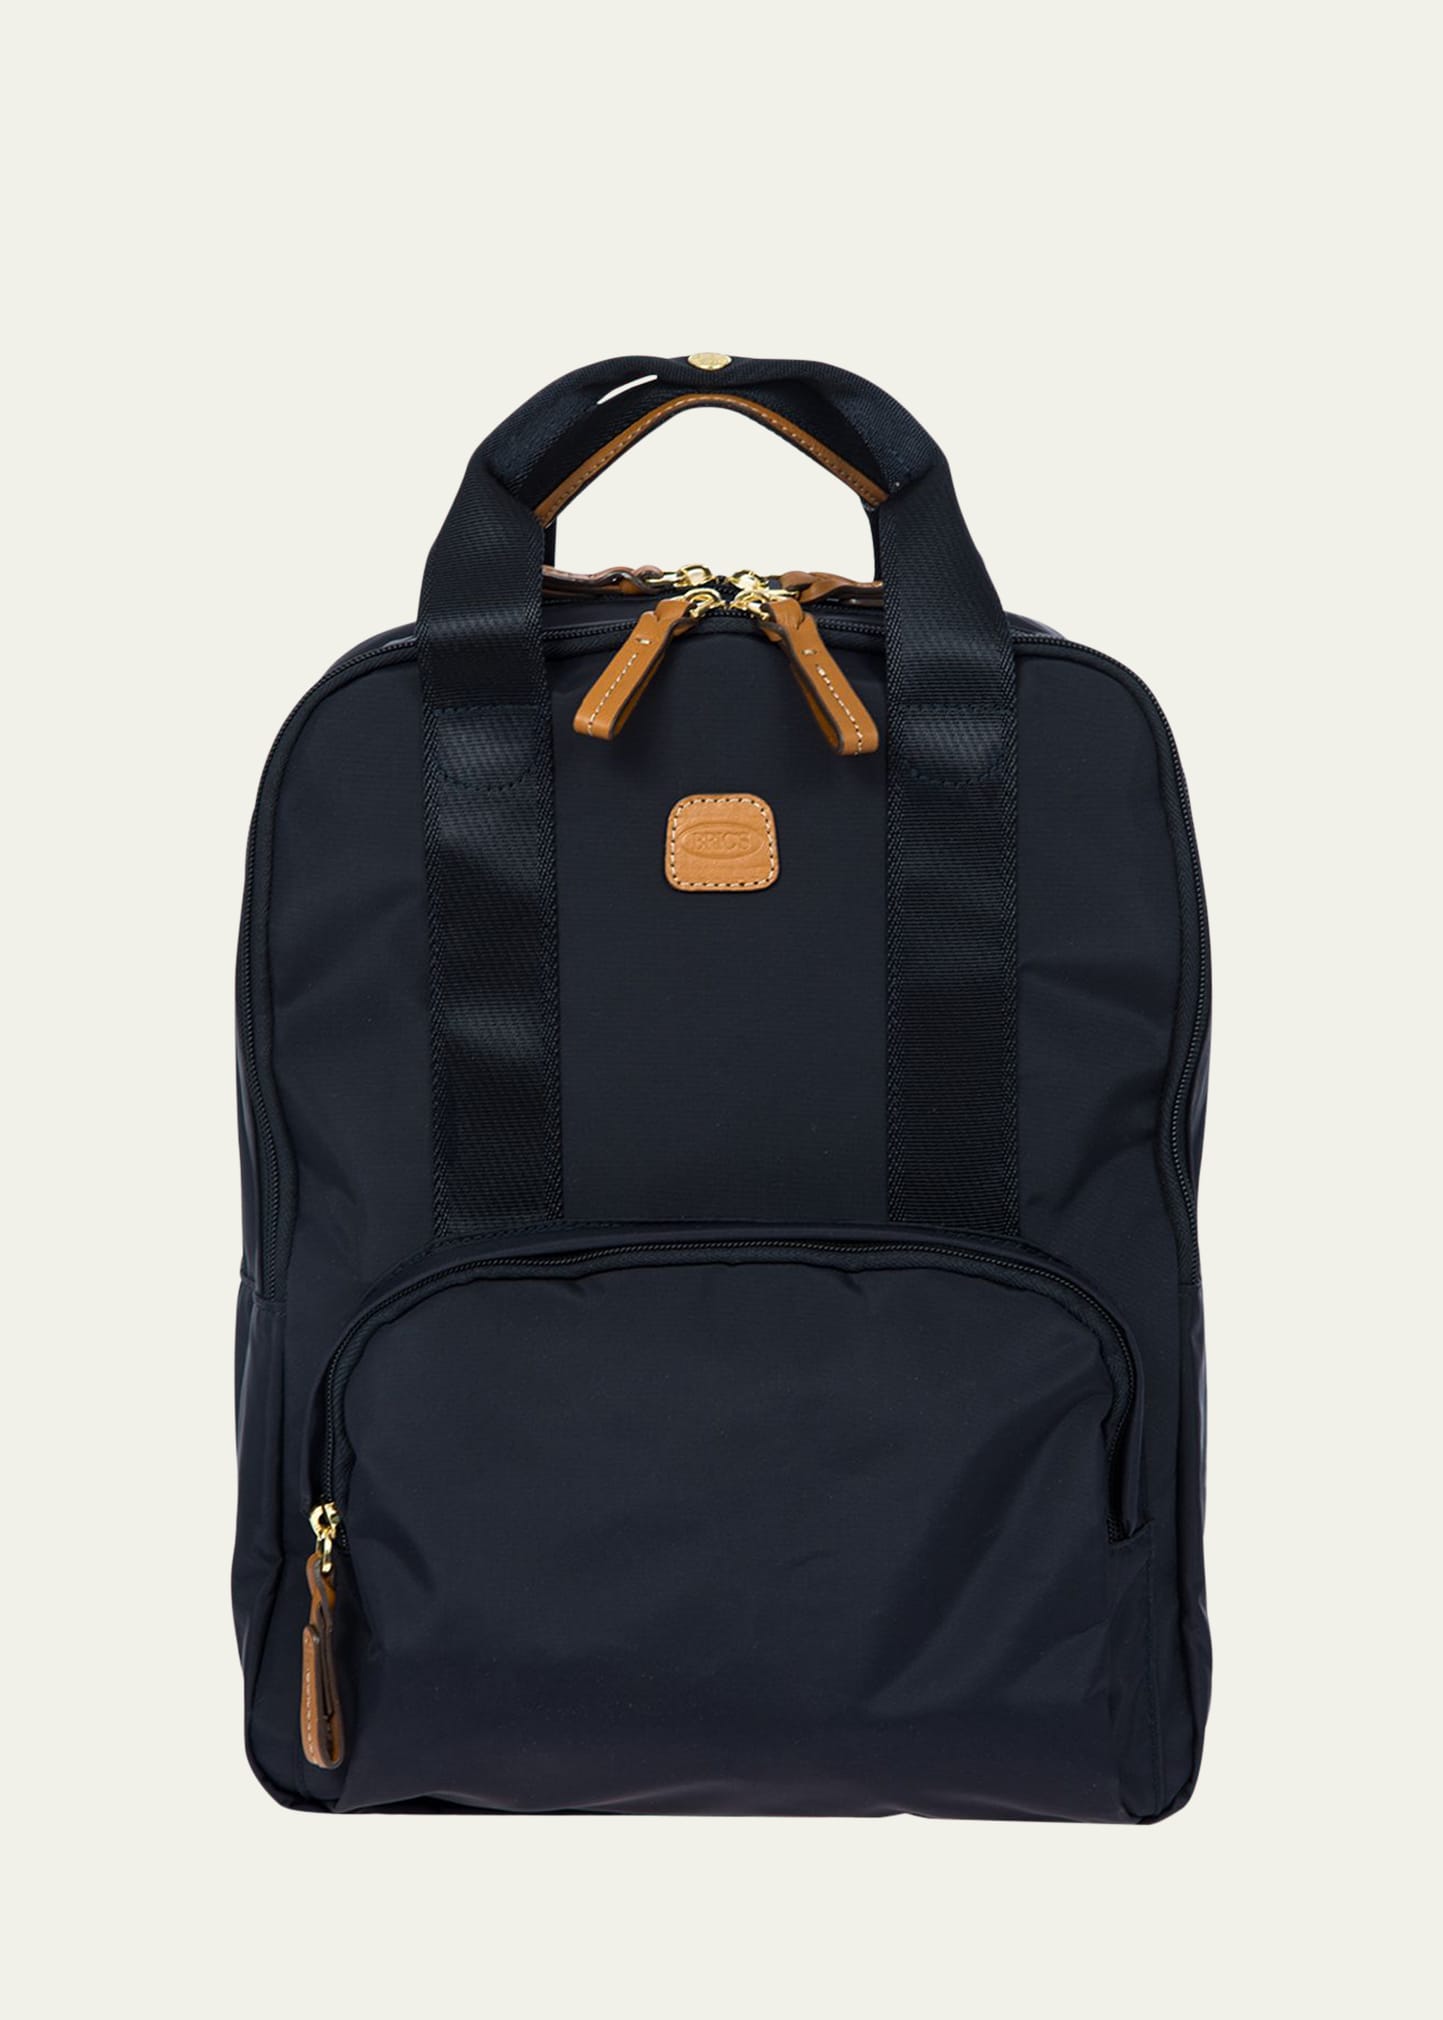 X-Travel Urban Backpack